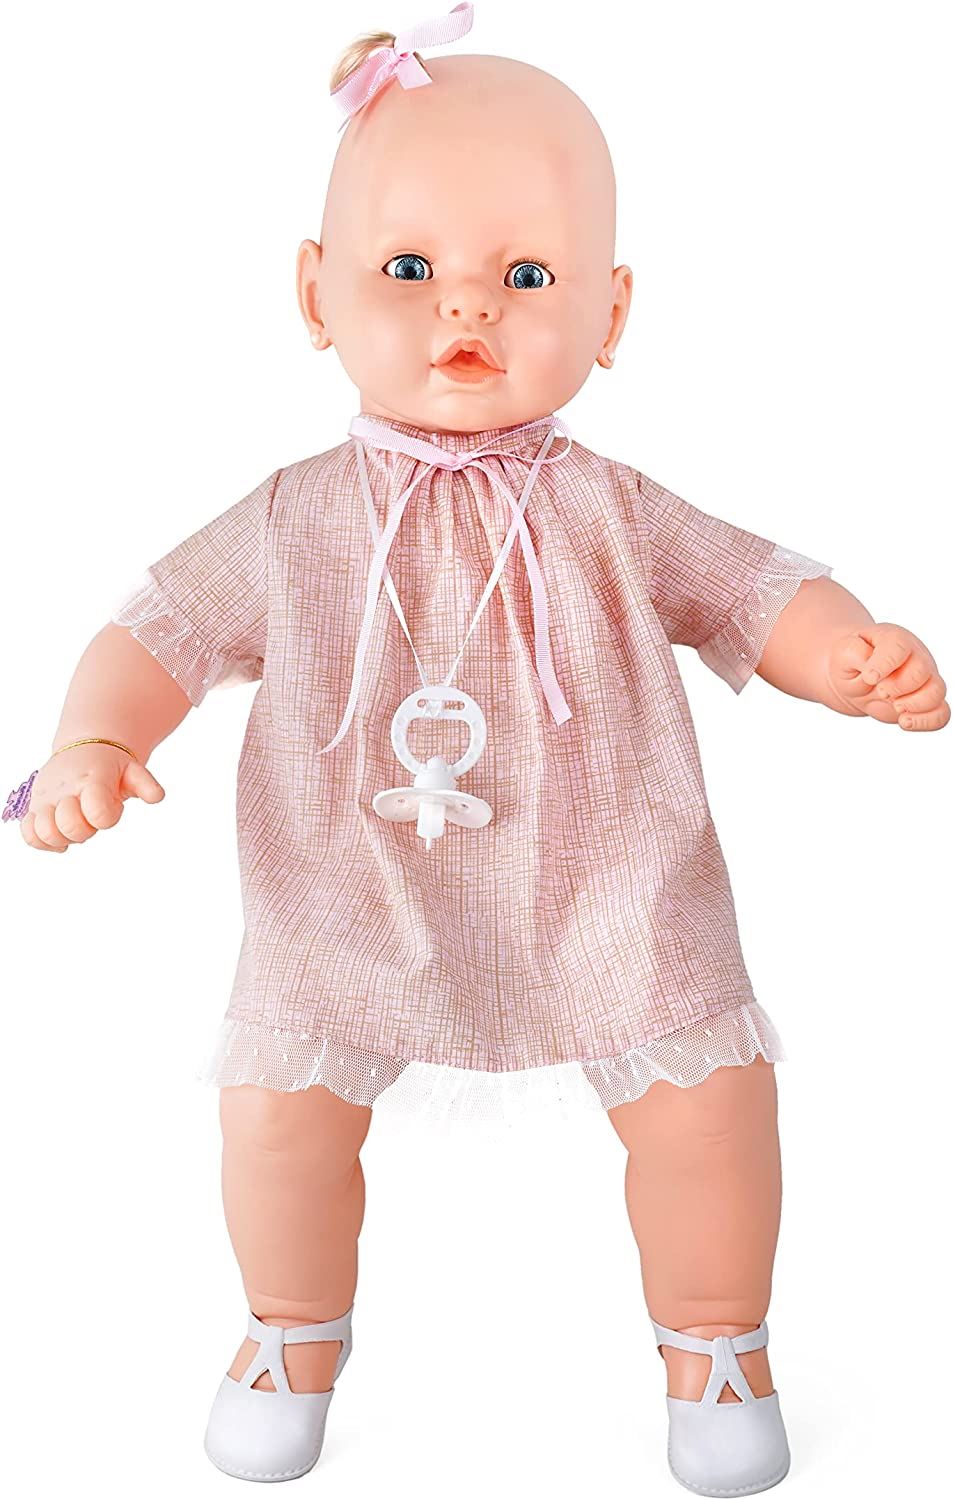 Estrela Baby: Brinquedos de criança 2 anos - Estrela - Estrela